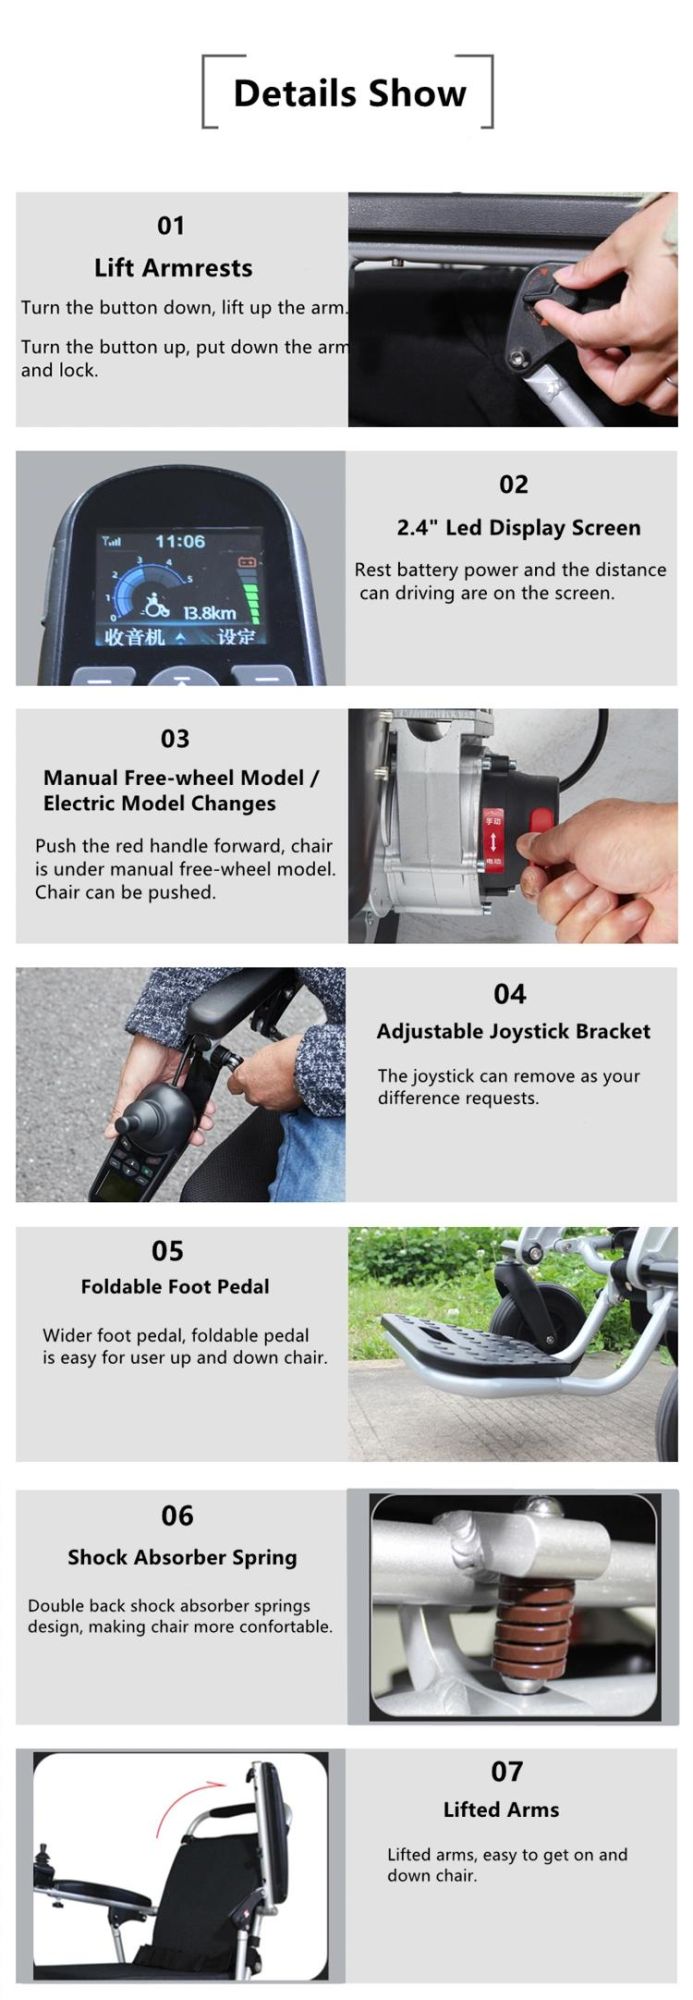 Handicap Travel Fauteuil Roulant Electrique Folding Electric Power Wheelchair